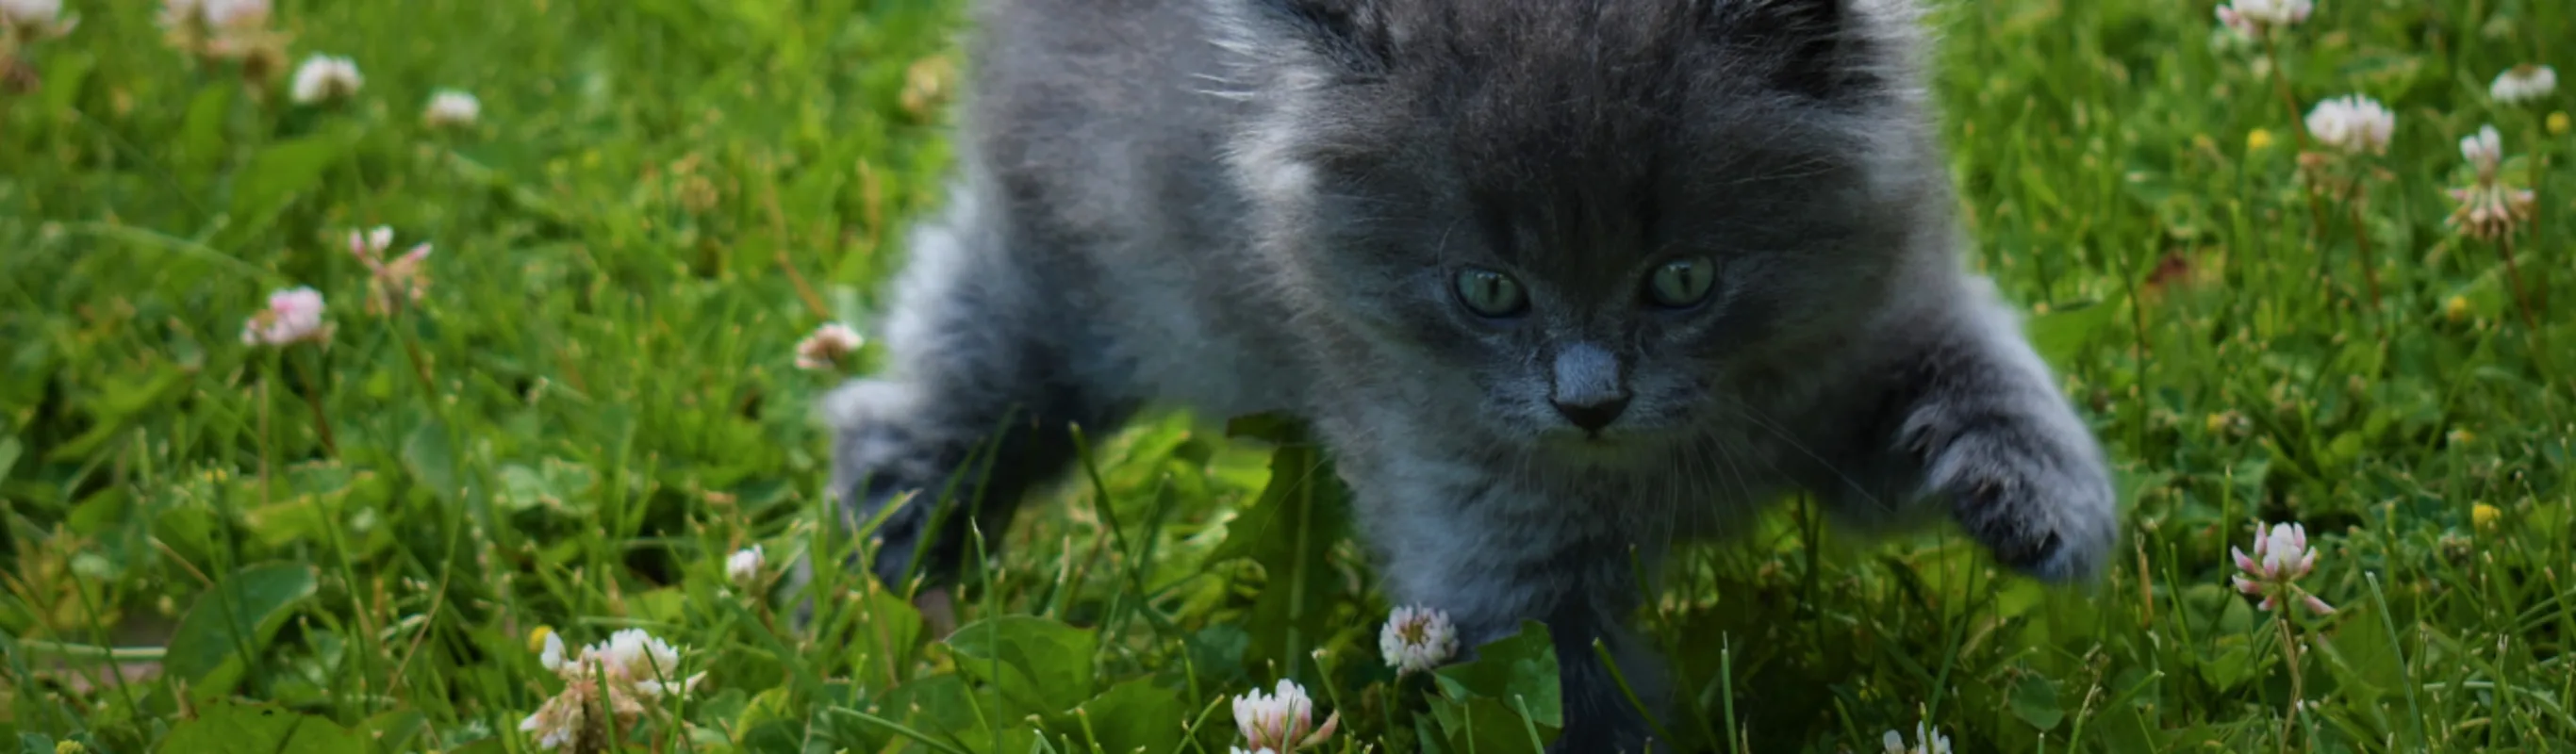 Gray kitten running through grass and flowers